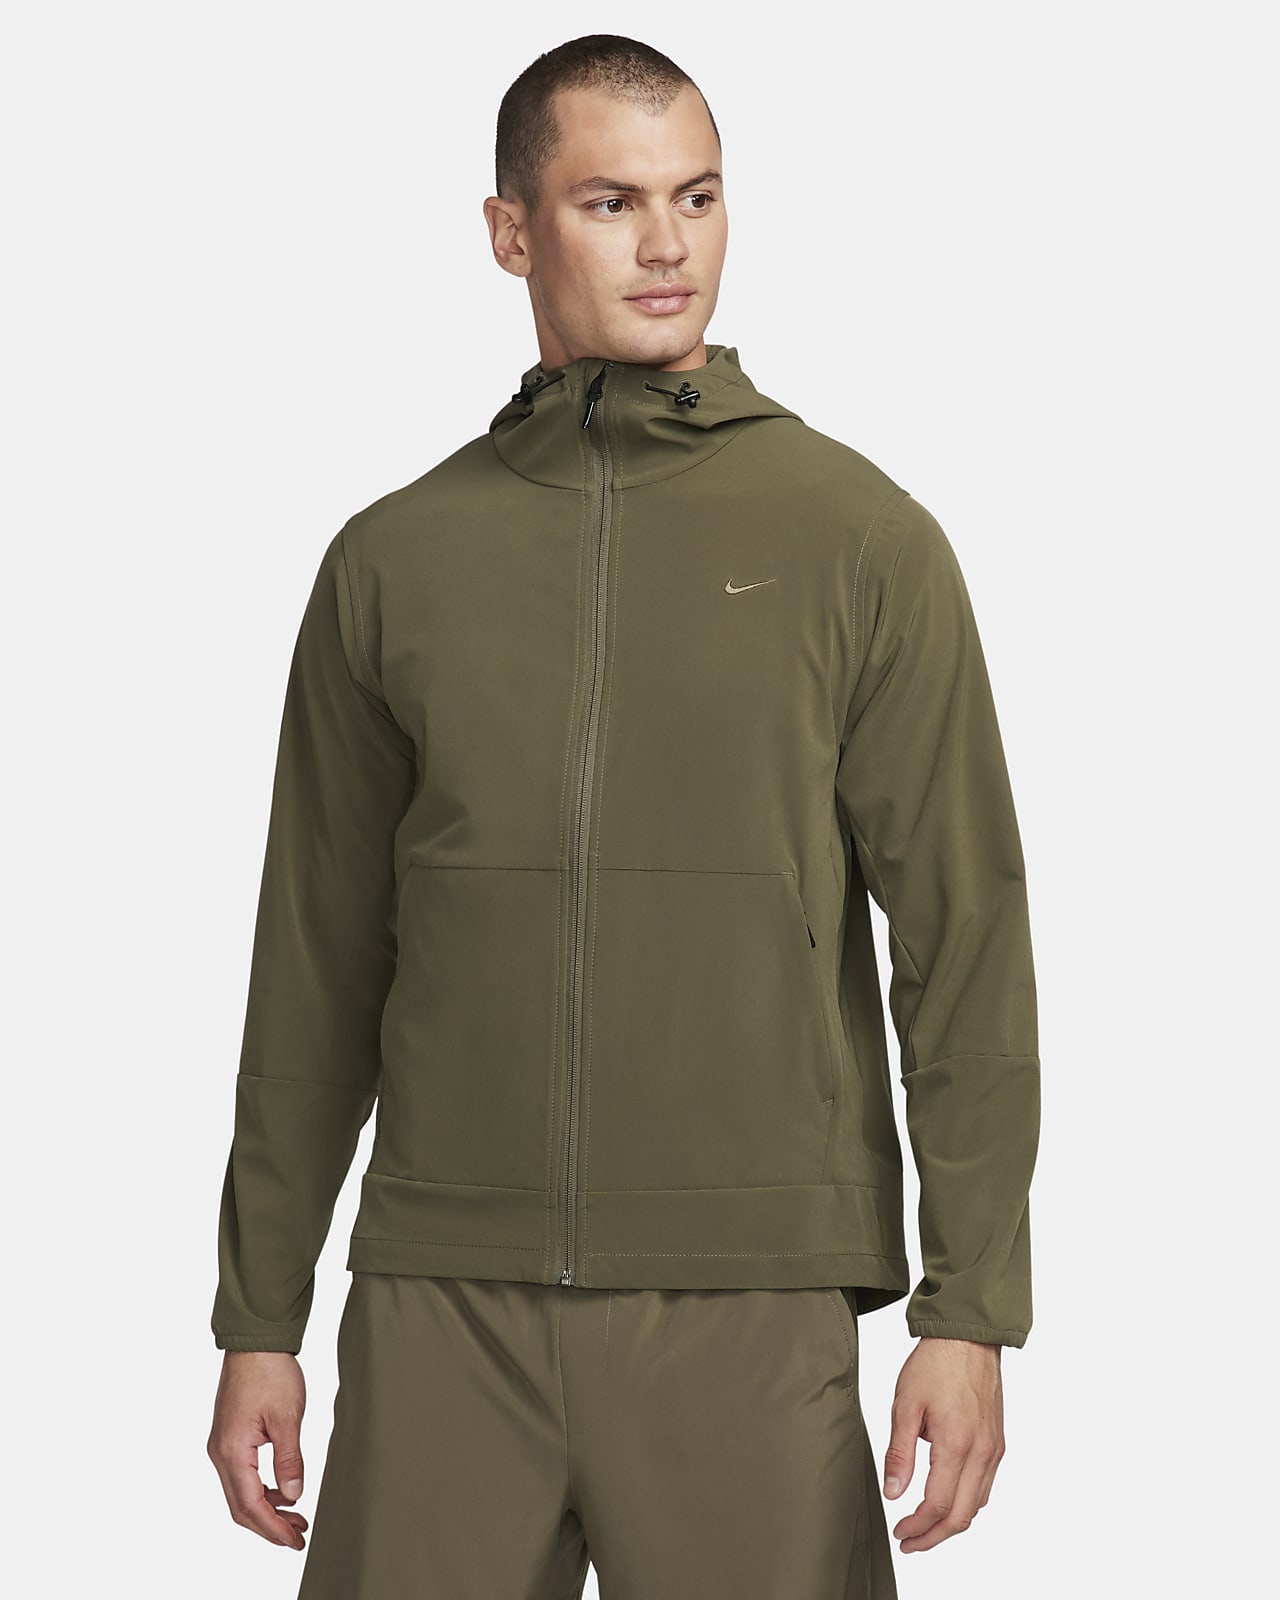 Nike Unlimited vielseitige, wasserabweisende Jacke mit Kapuze für Herren